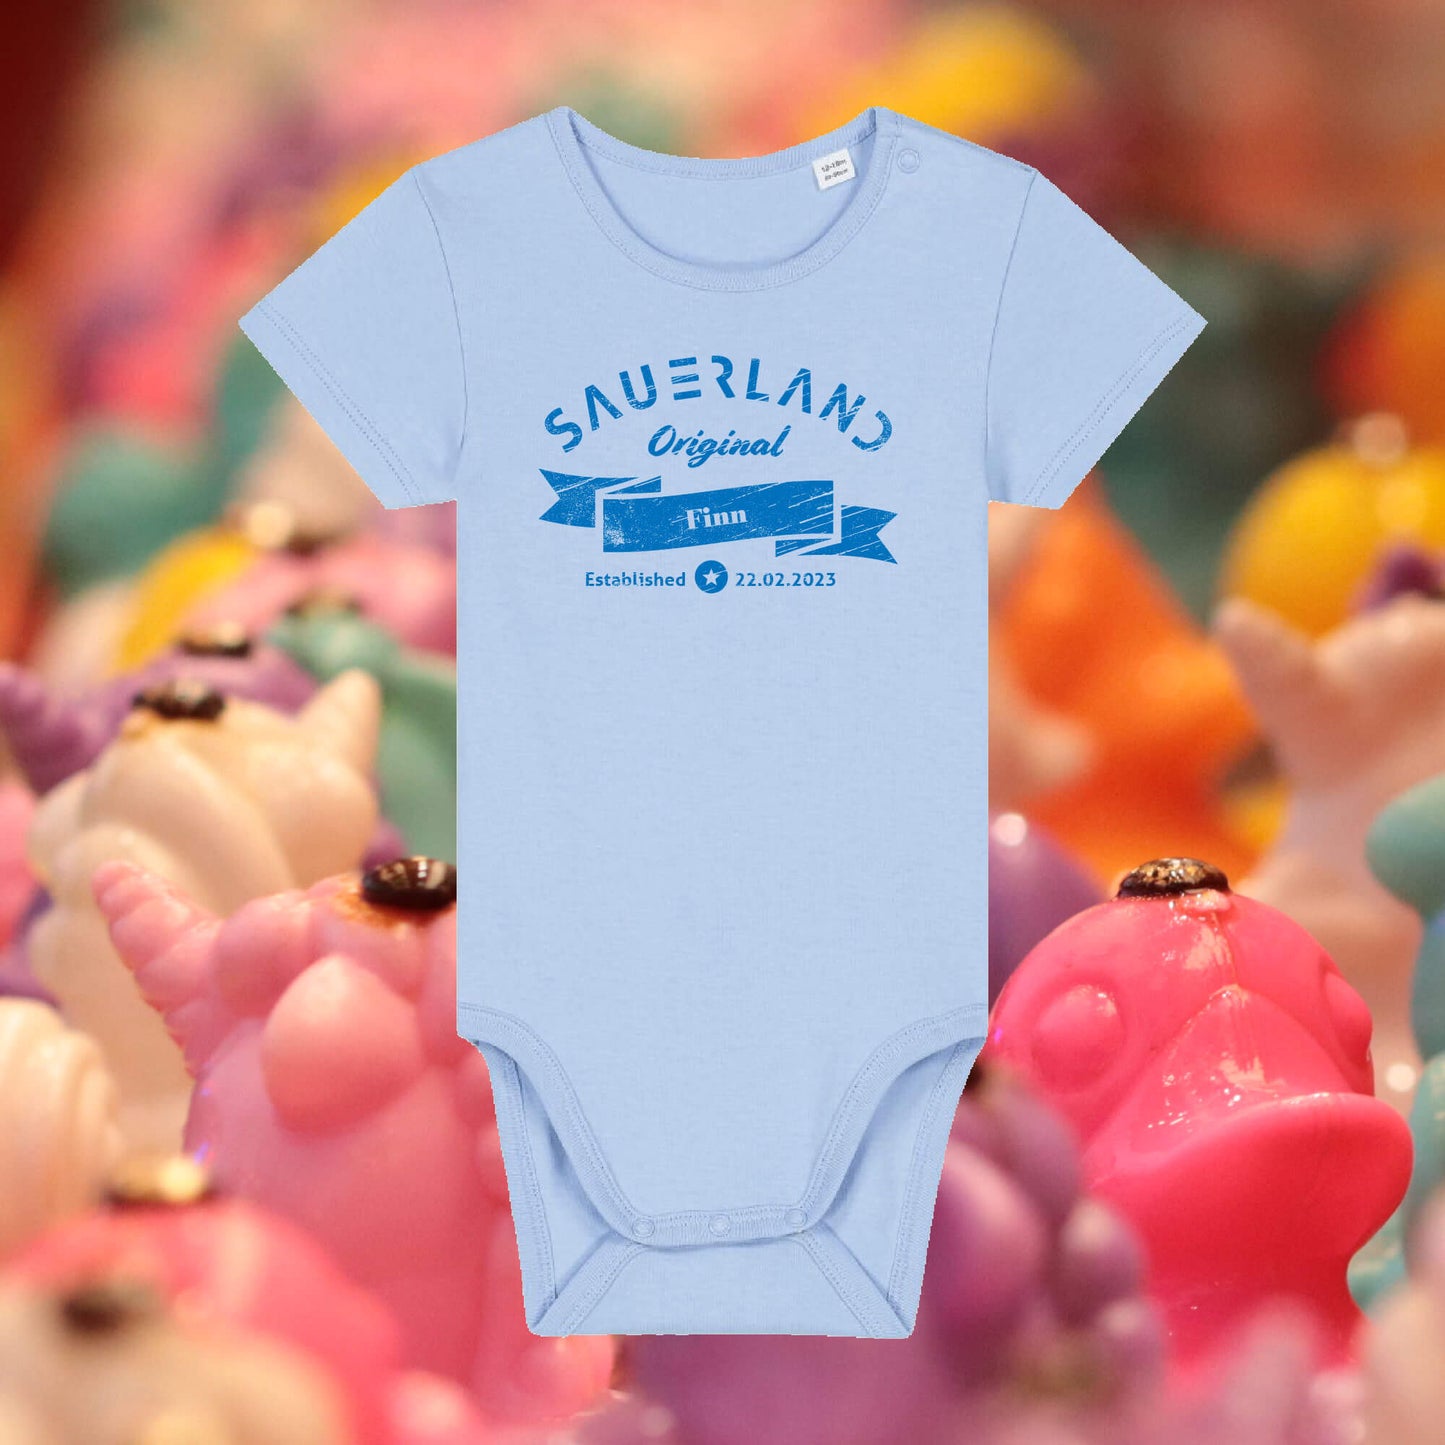 Sauerland Baby-Body in hellblau mit dunkelblauem Aufdruck Sauerland Original. Der Baby-Body kann mit dem Namen und Geburtsdatum des Kindes individualisiert werden.